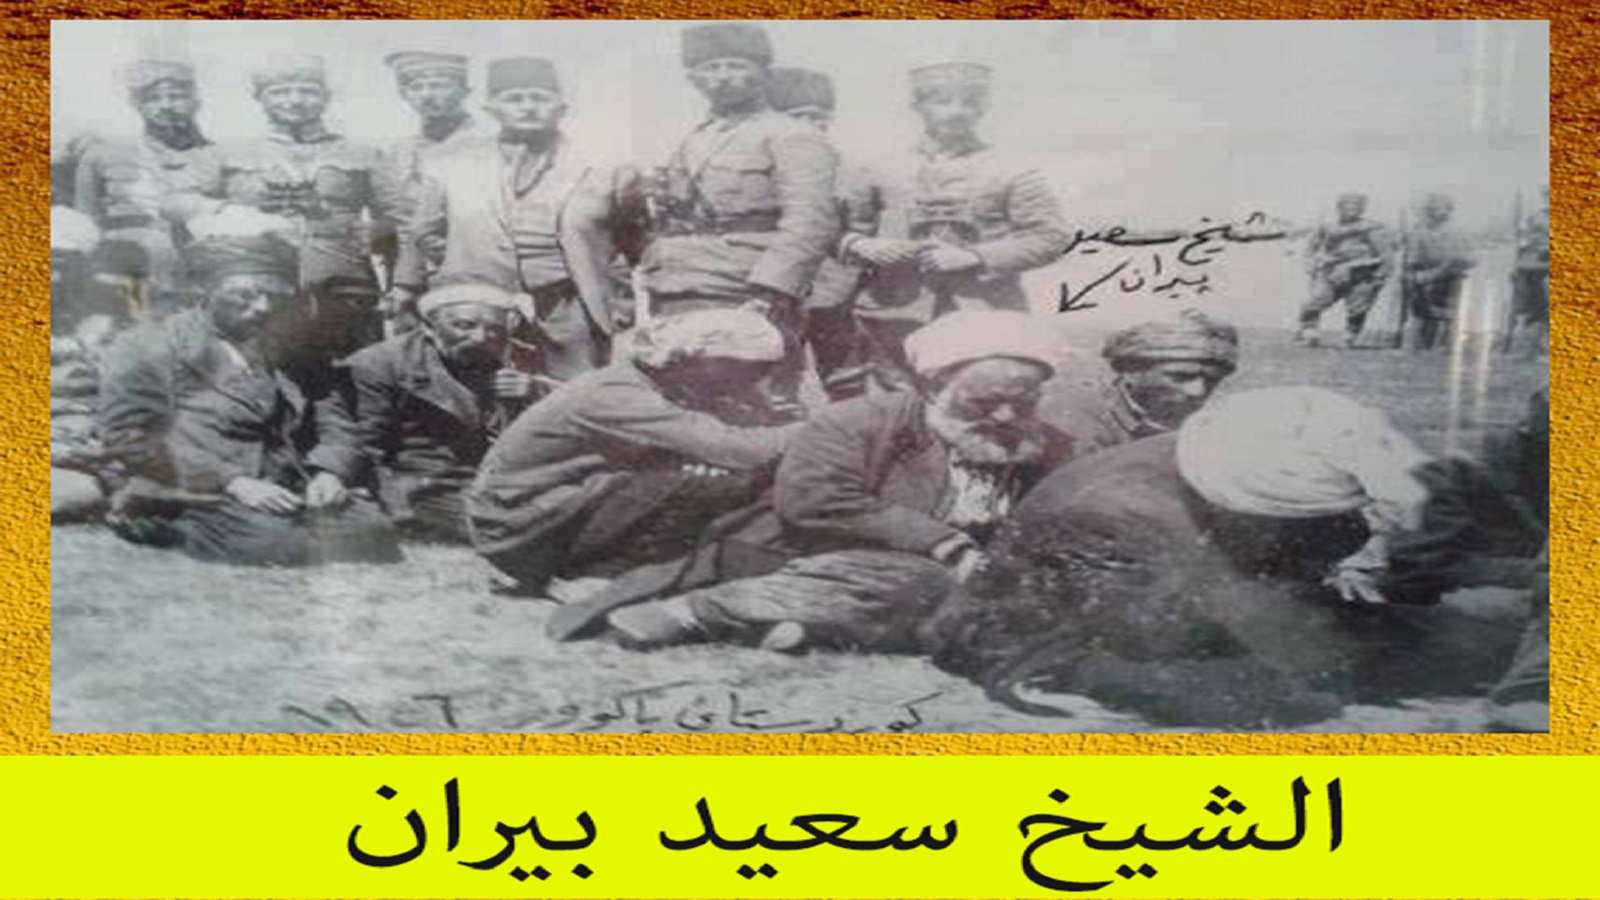  الشيخ سعيد بيران، قائد انتفاضة 1925.